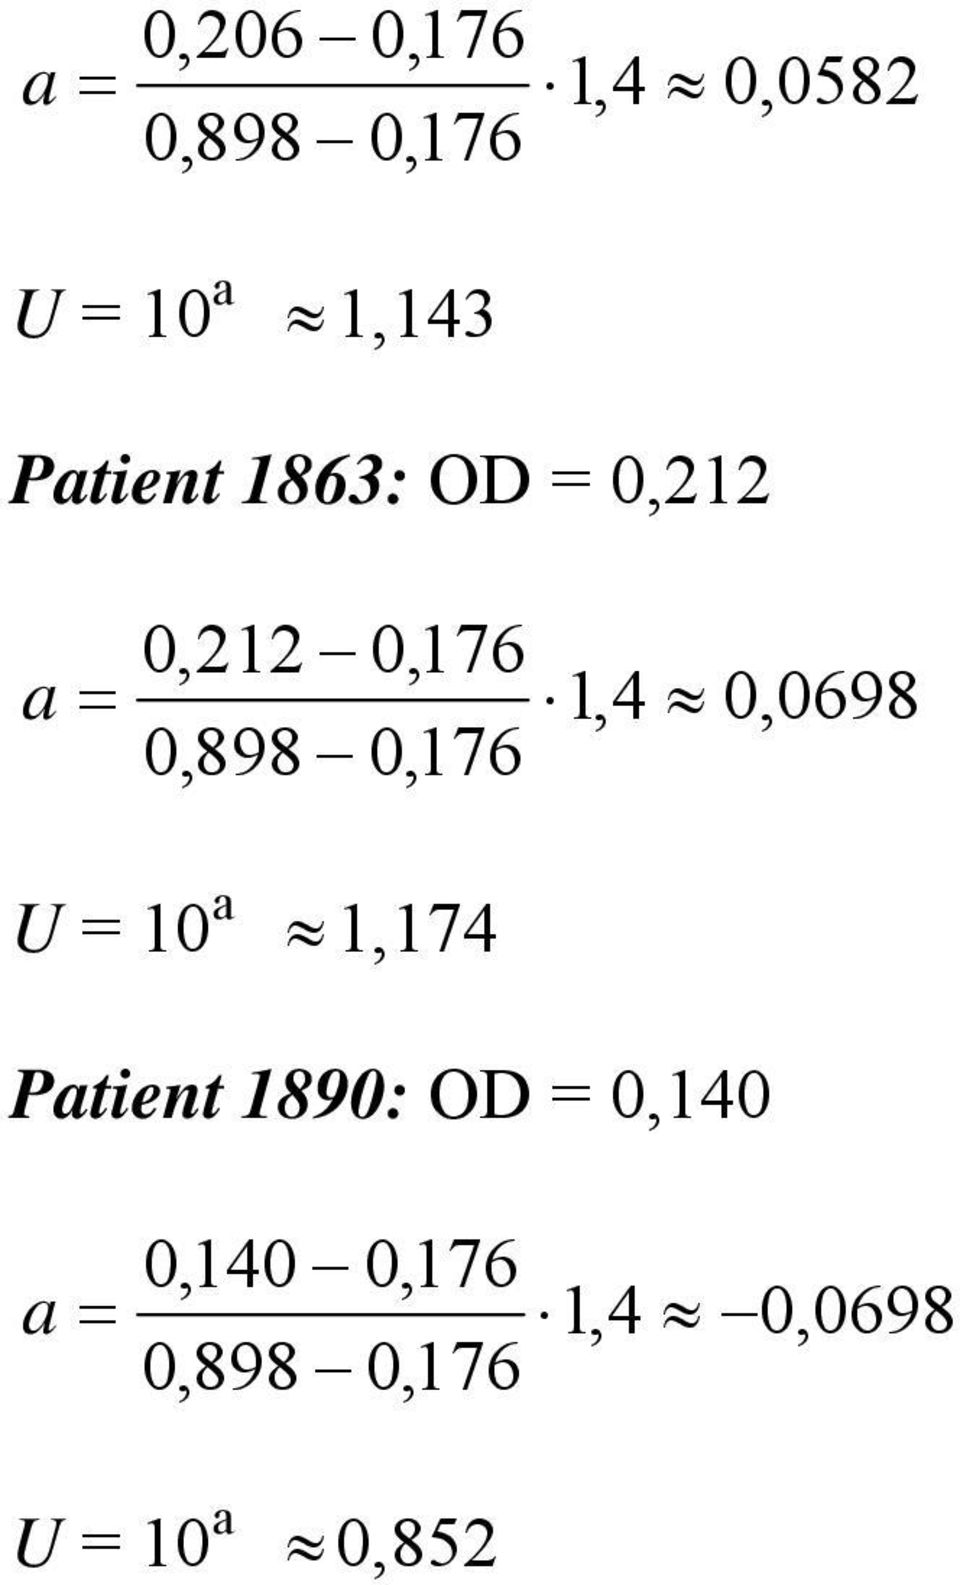 0,0698 U = 10 1,174 Patient 1890: